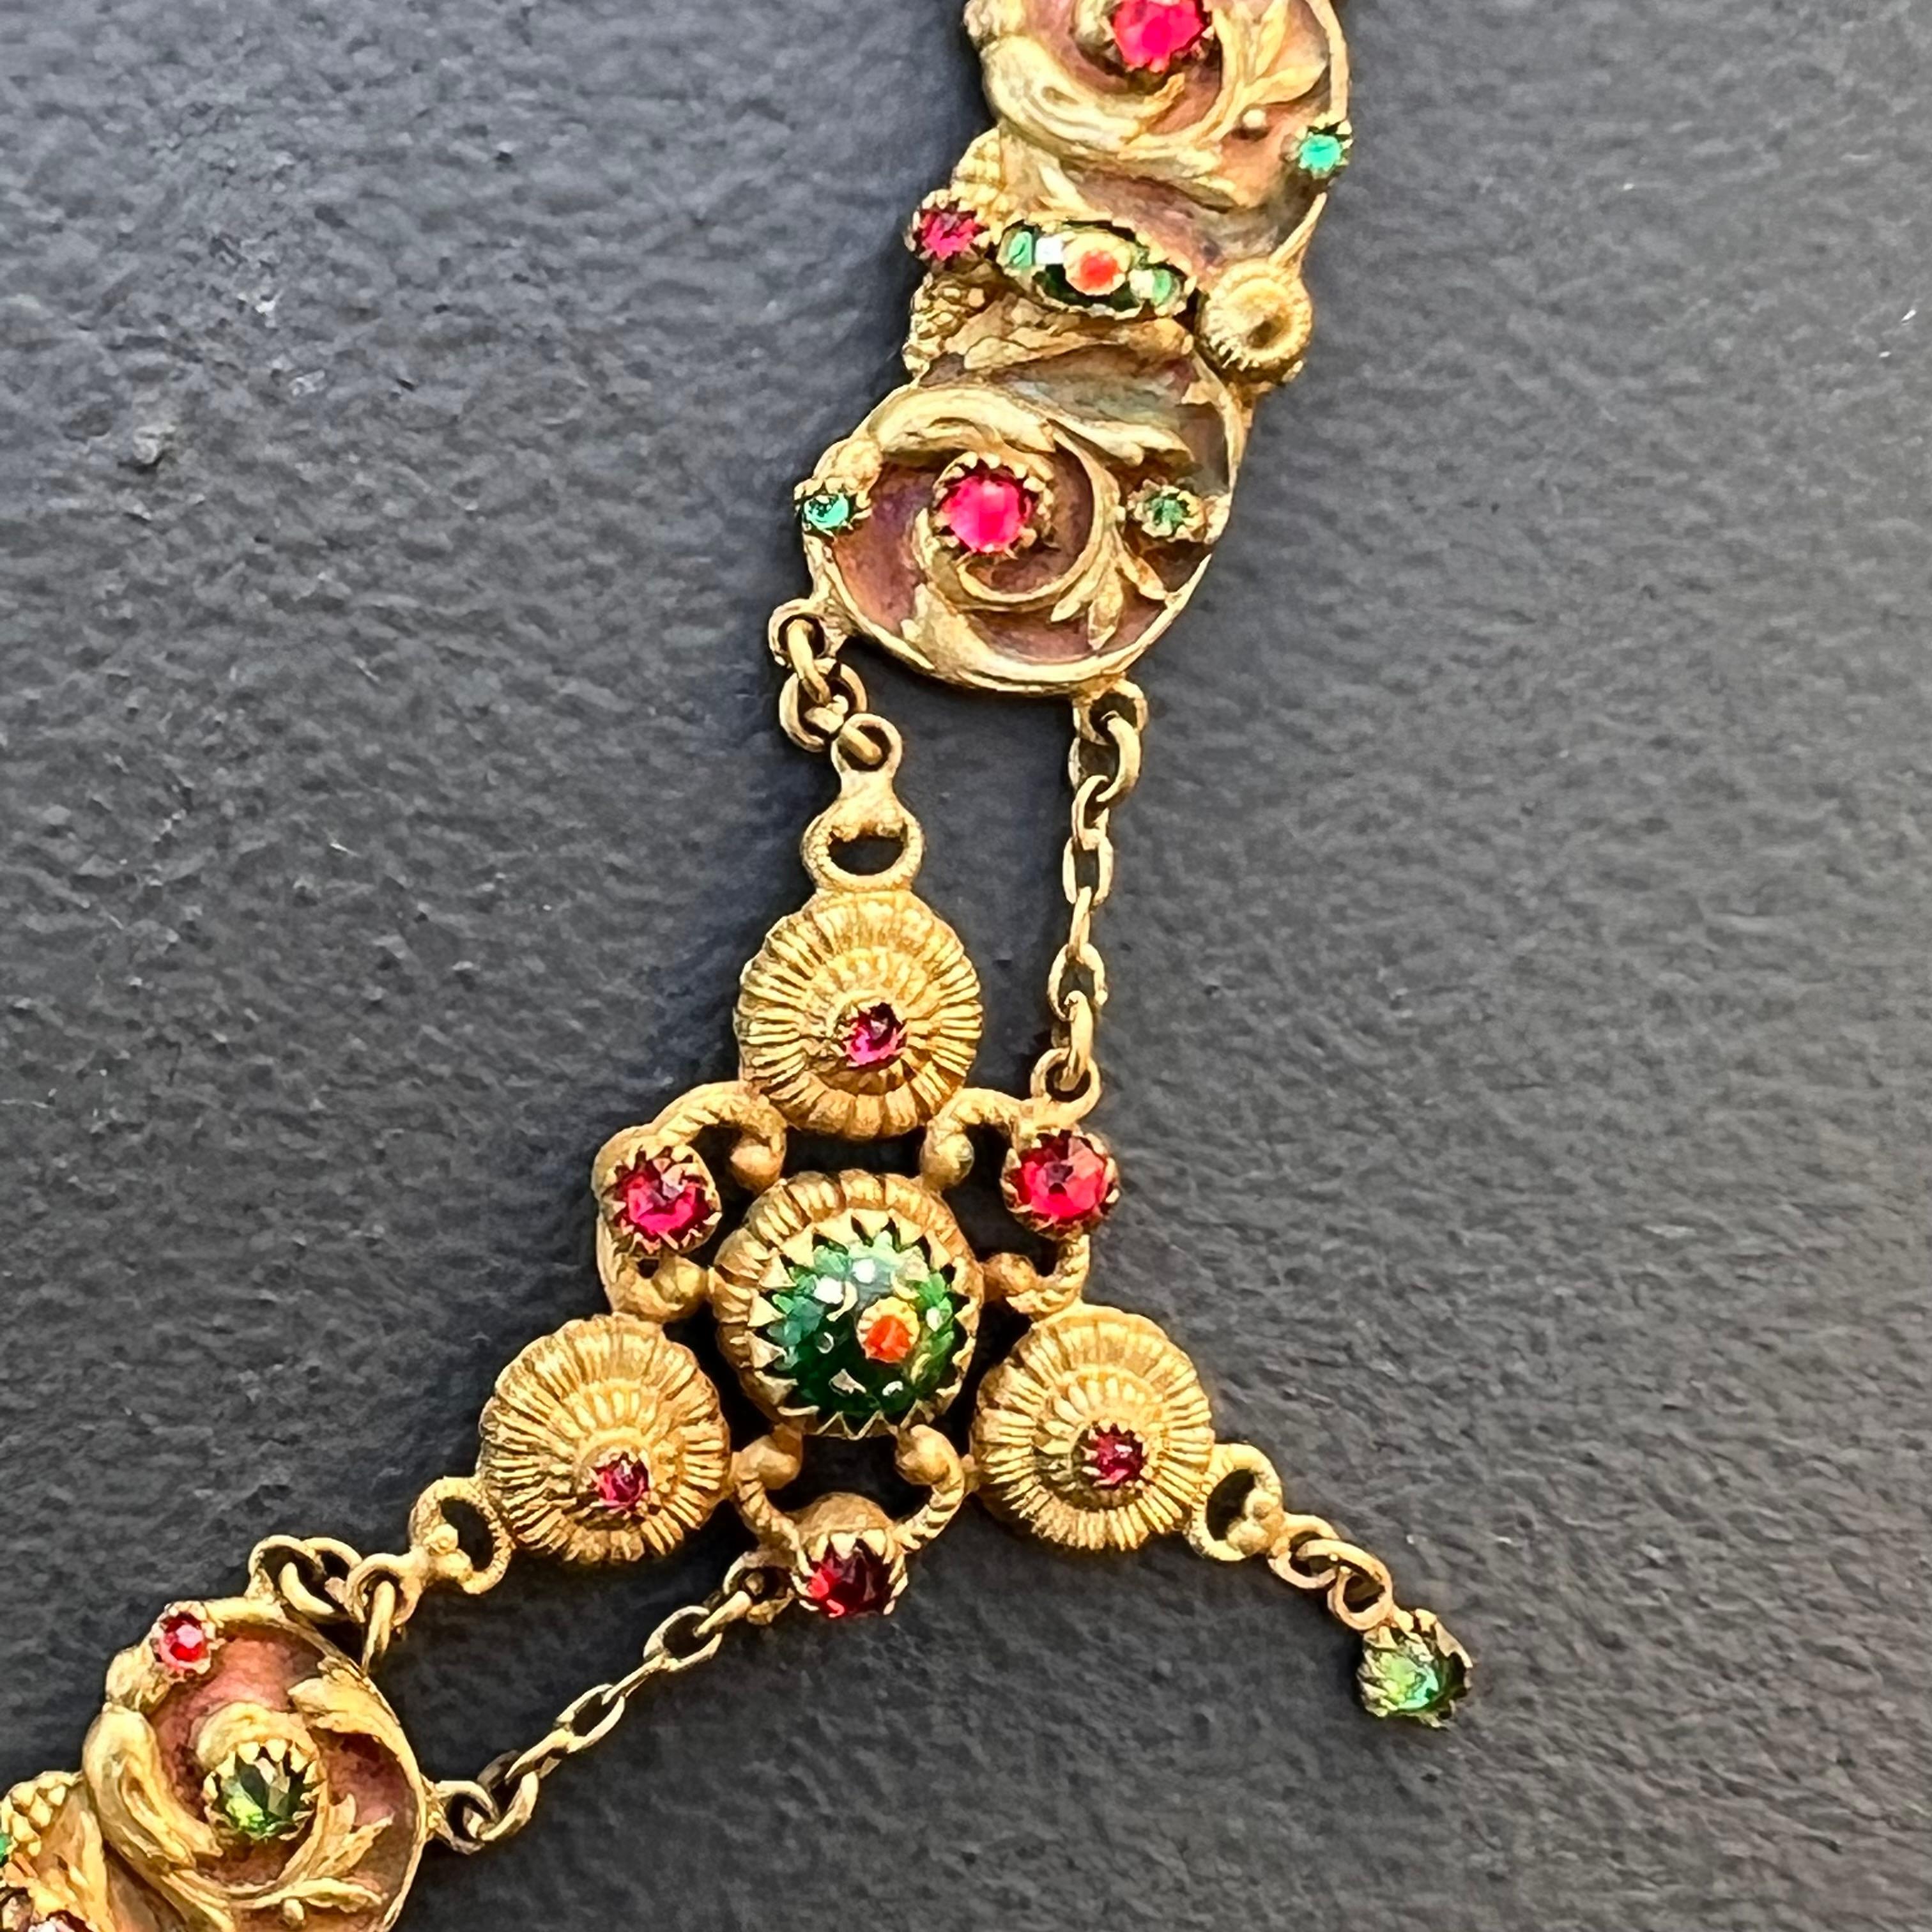 Antique Art Nouveau French Bresse Bressan Festoon Necklace For Sale 4